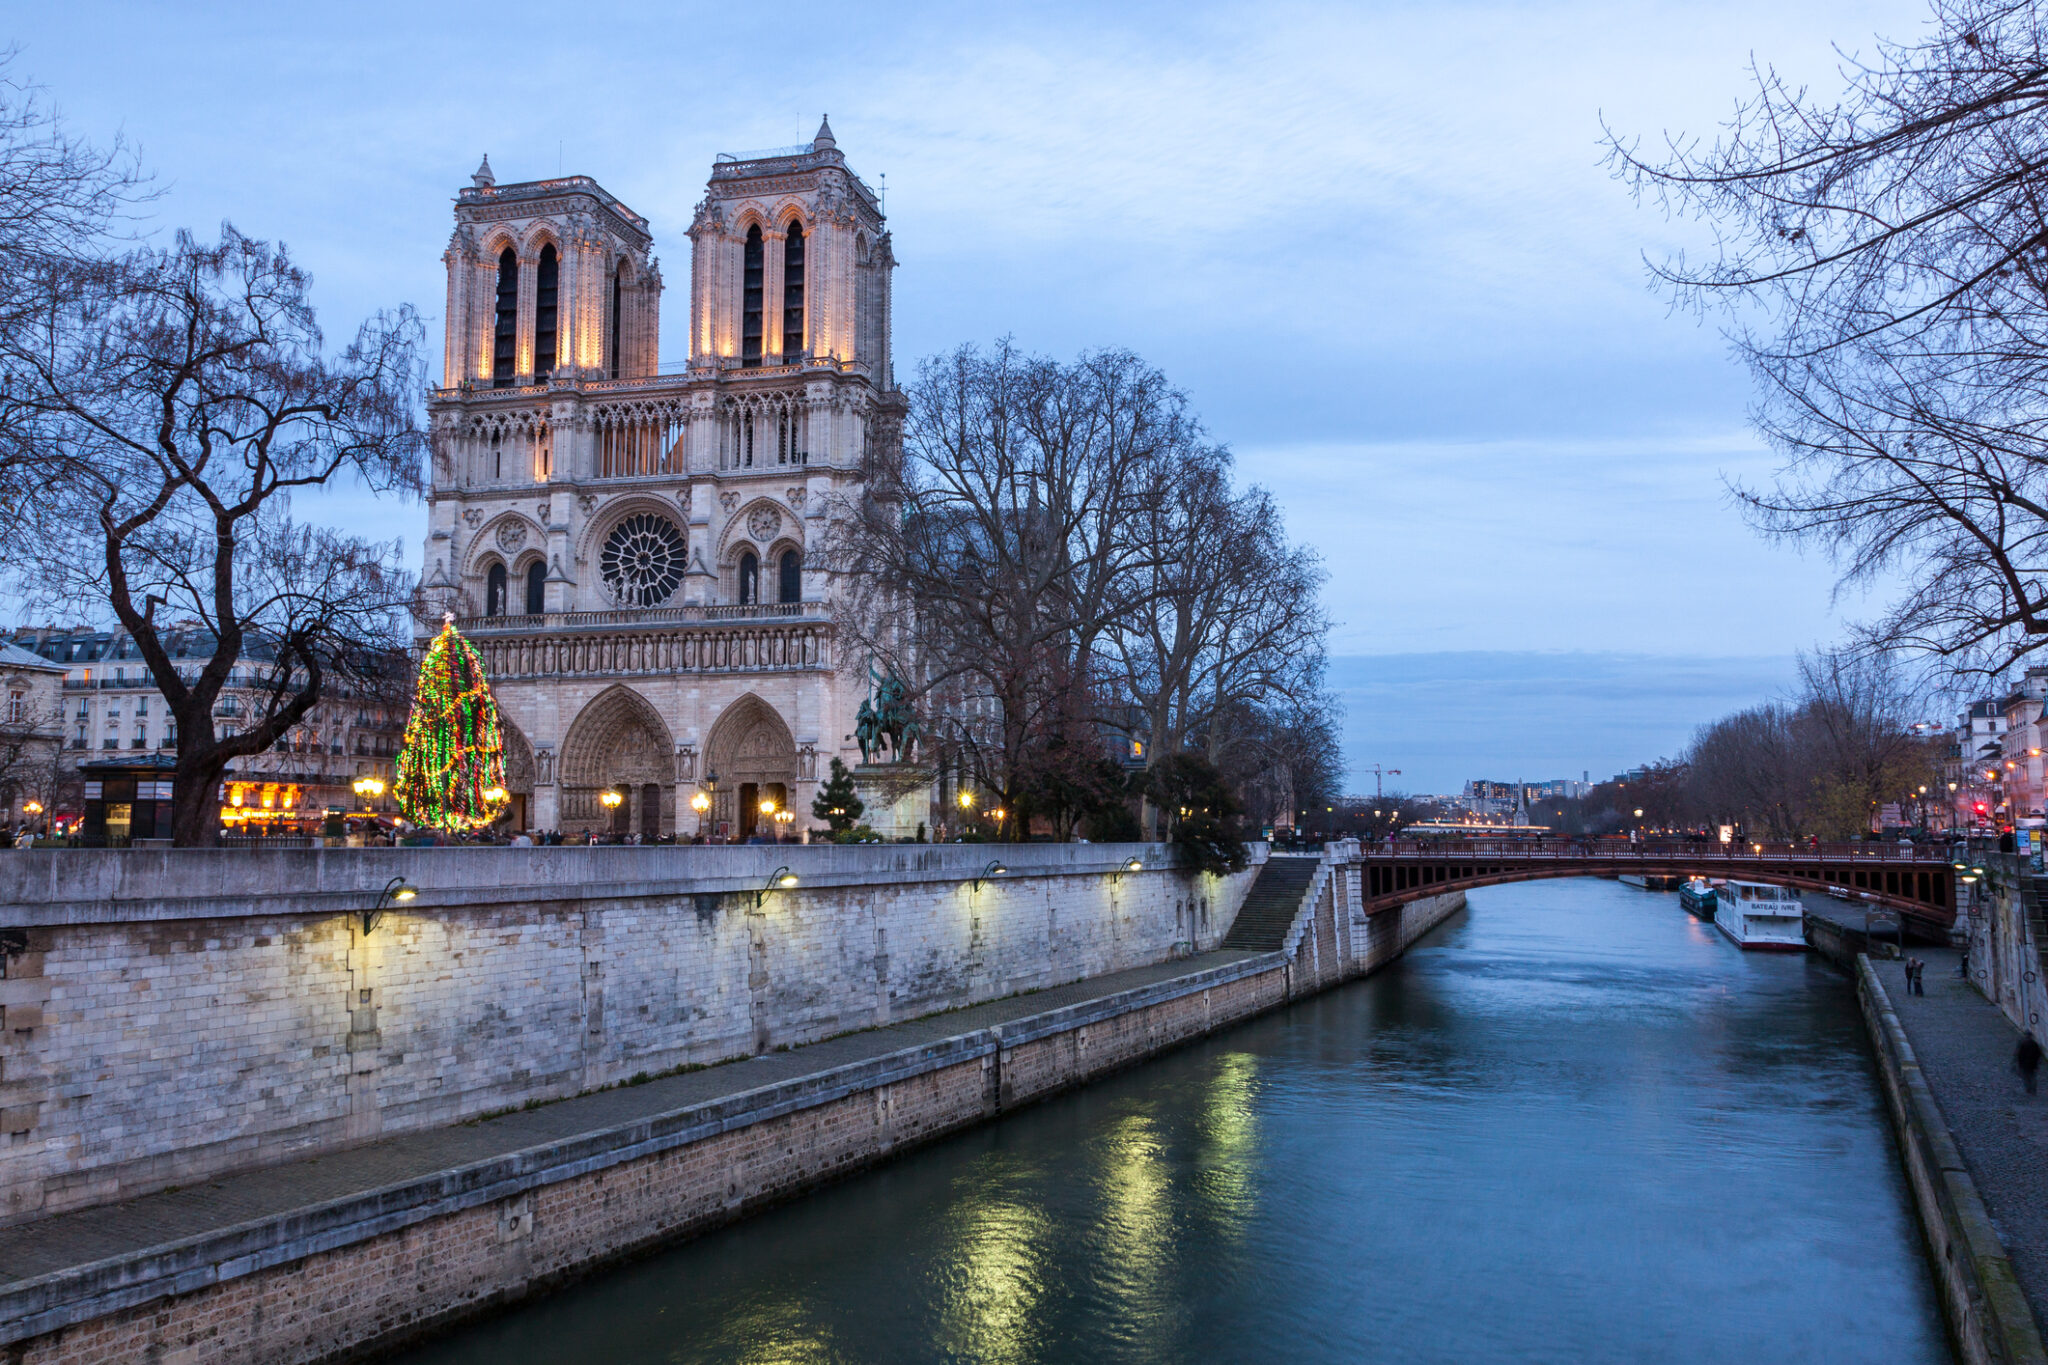 Notre Dame de Paris at dusk during Winter